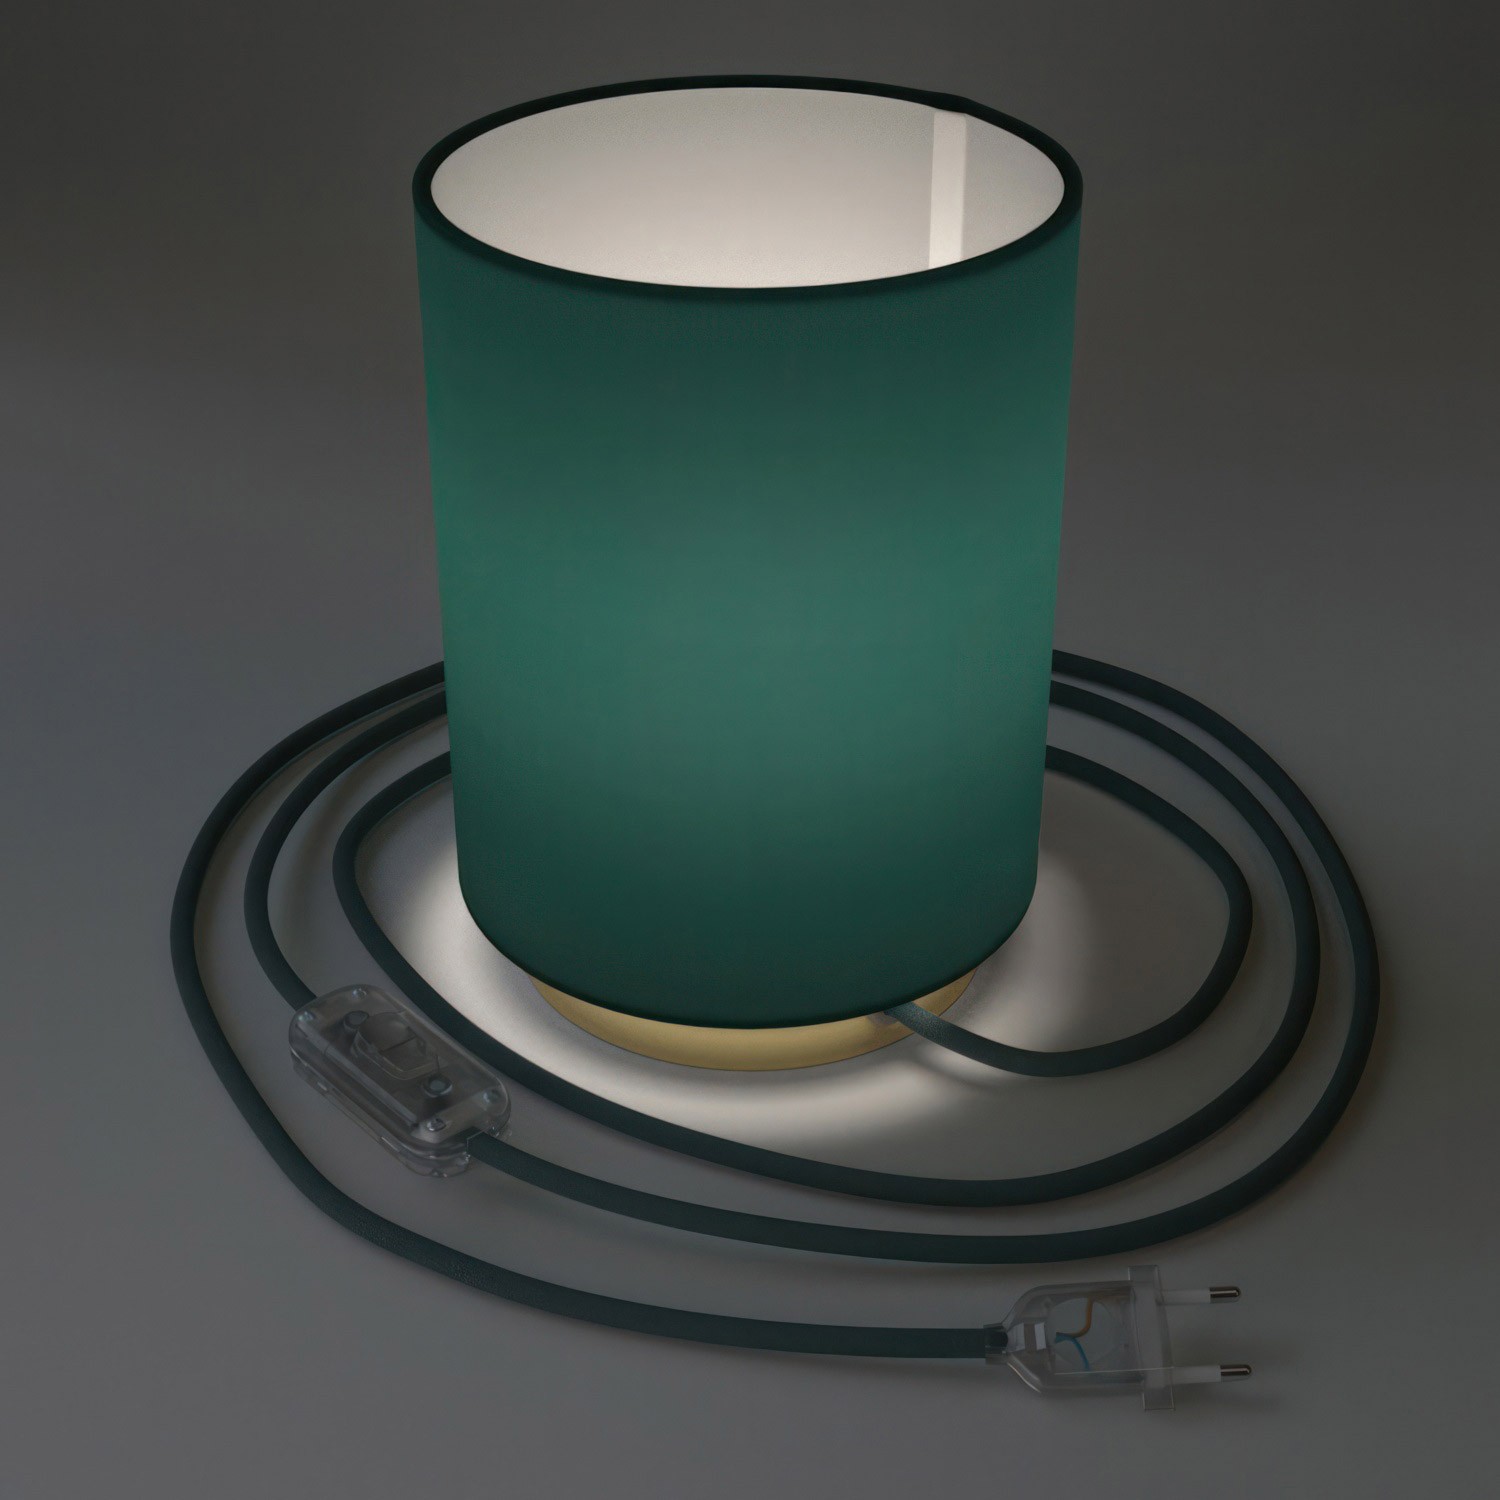 Posaluce aus Metall mit Lampenschirm Cilindro Cinette Petrolio, komplett mit Textilkabel, Schalter und 2-poligem Stecker